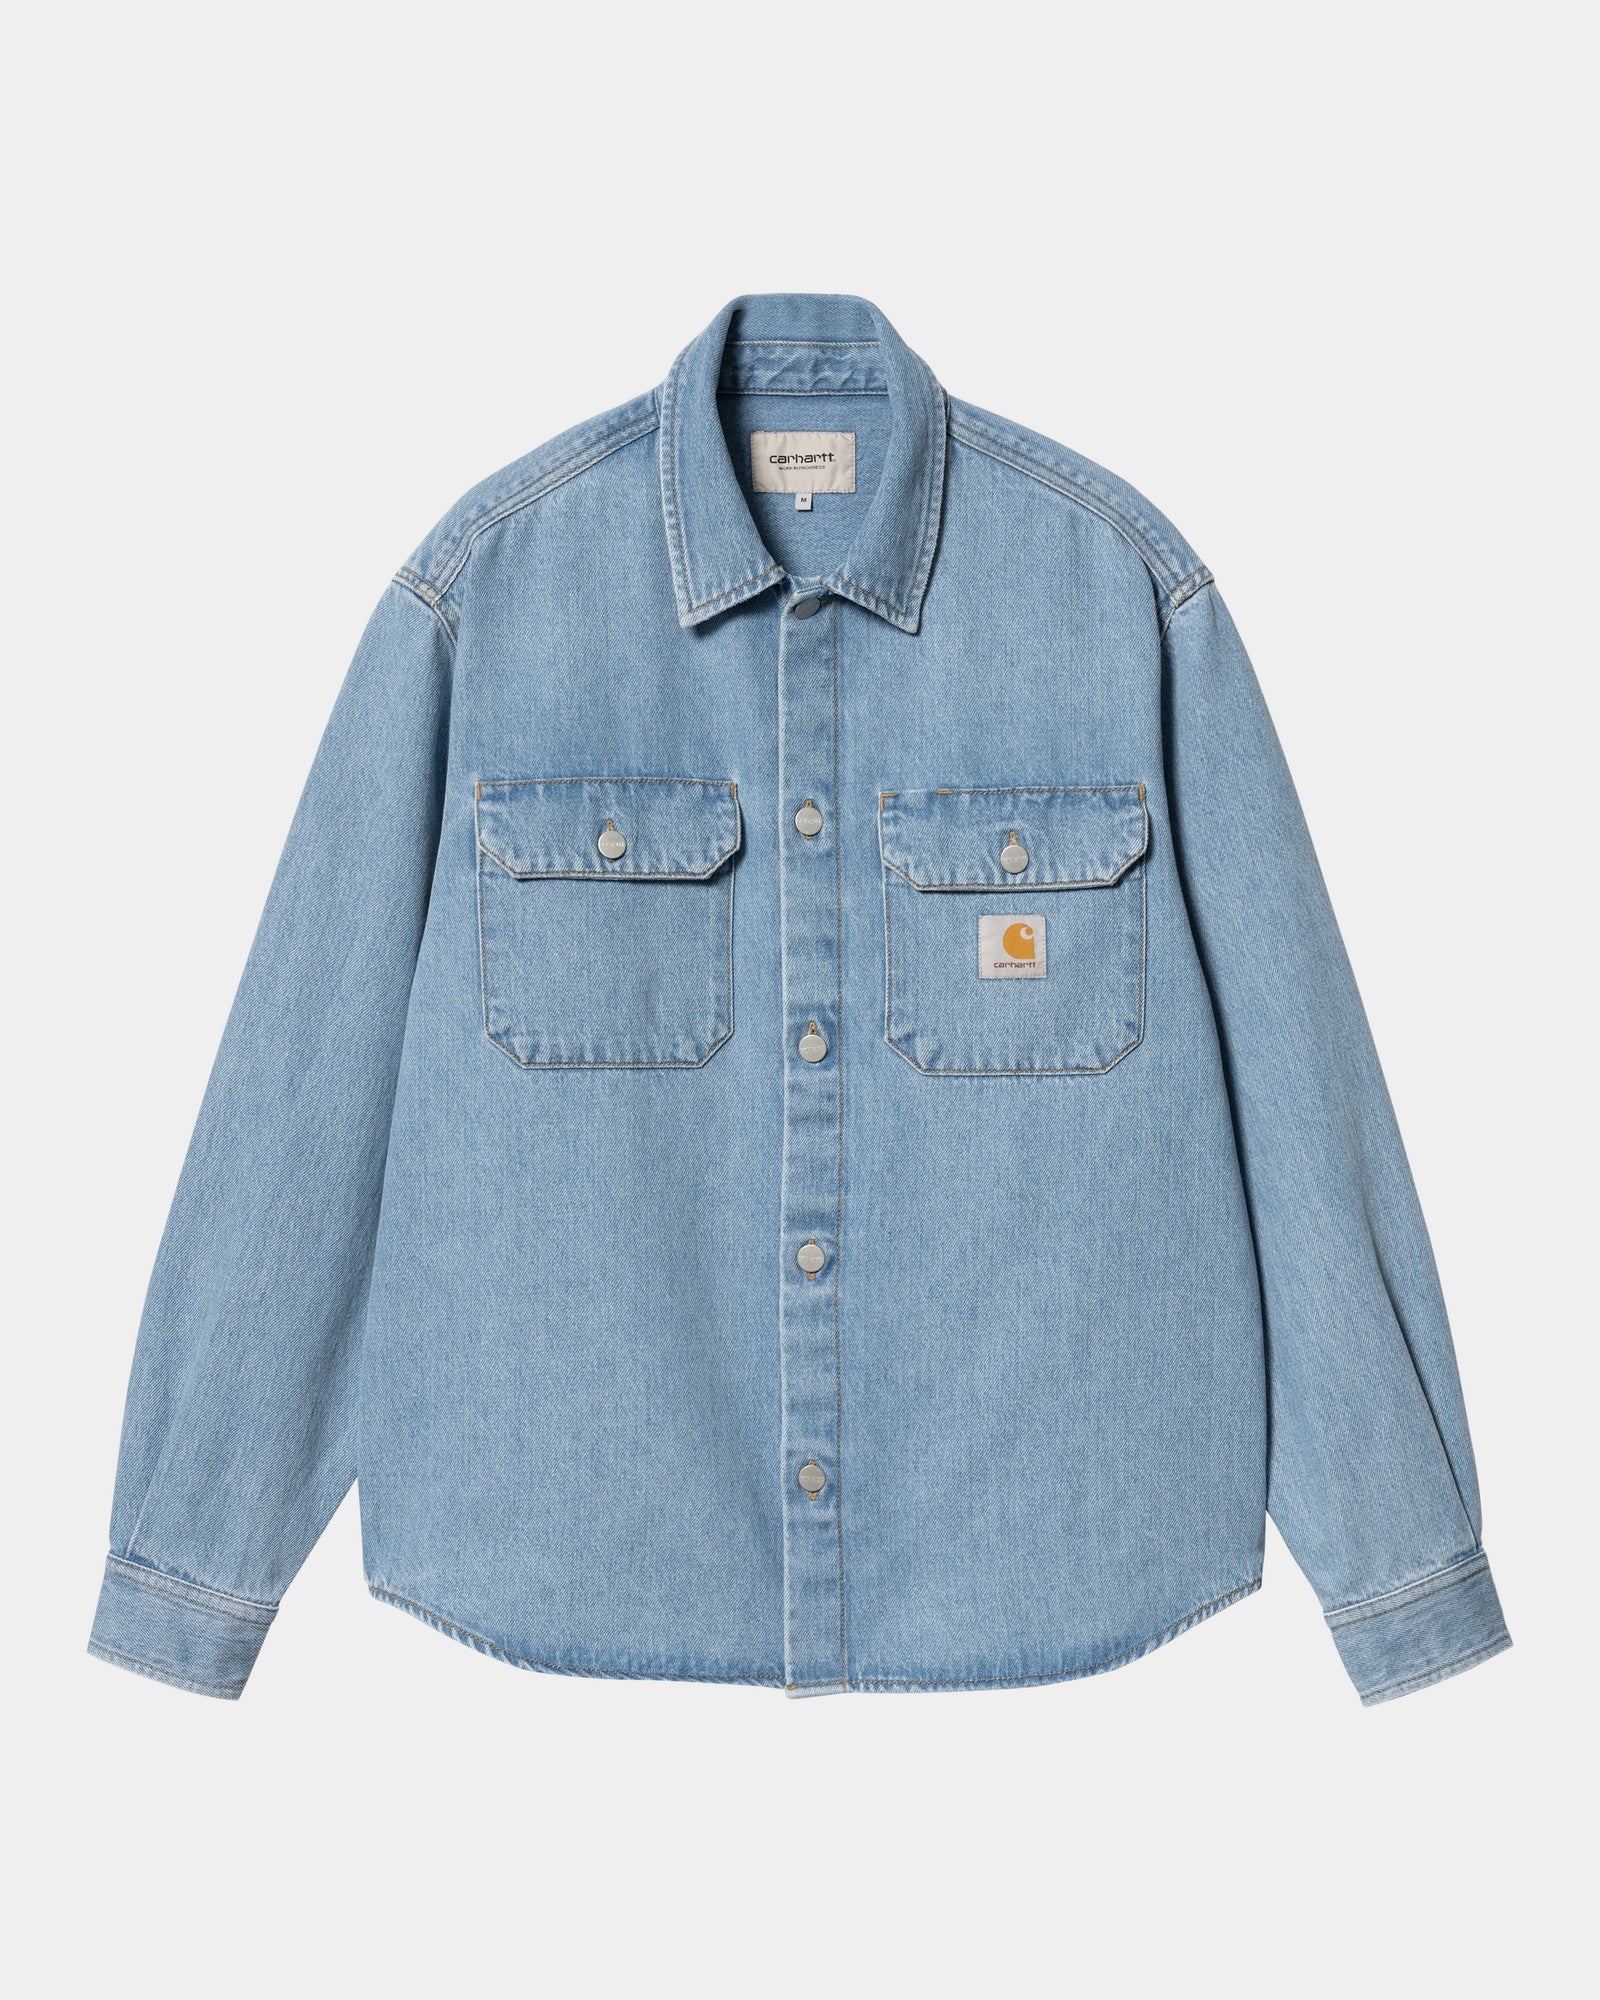 칼하트WIP Carhartt Harvey Shirt Jacket,Blue stone bleached